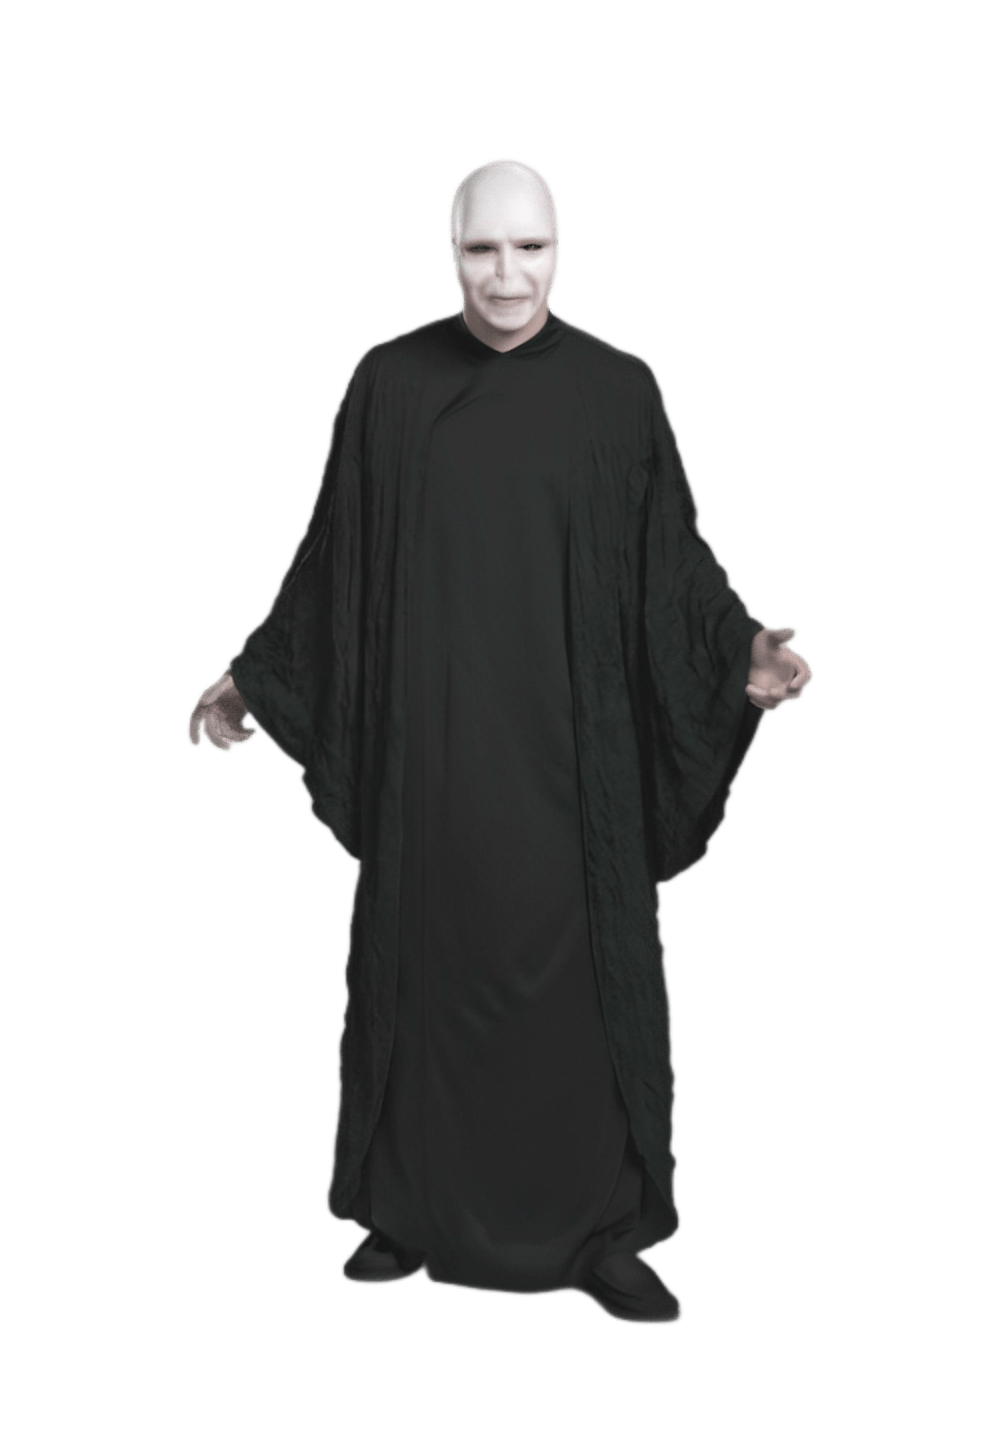 Voldemort Deluxe Adult